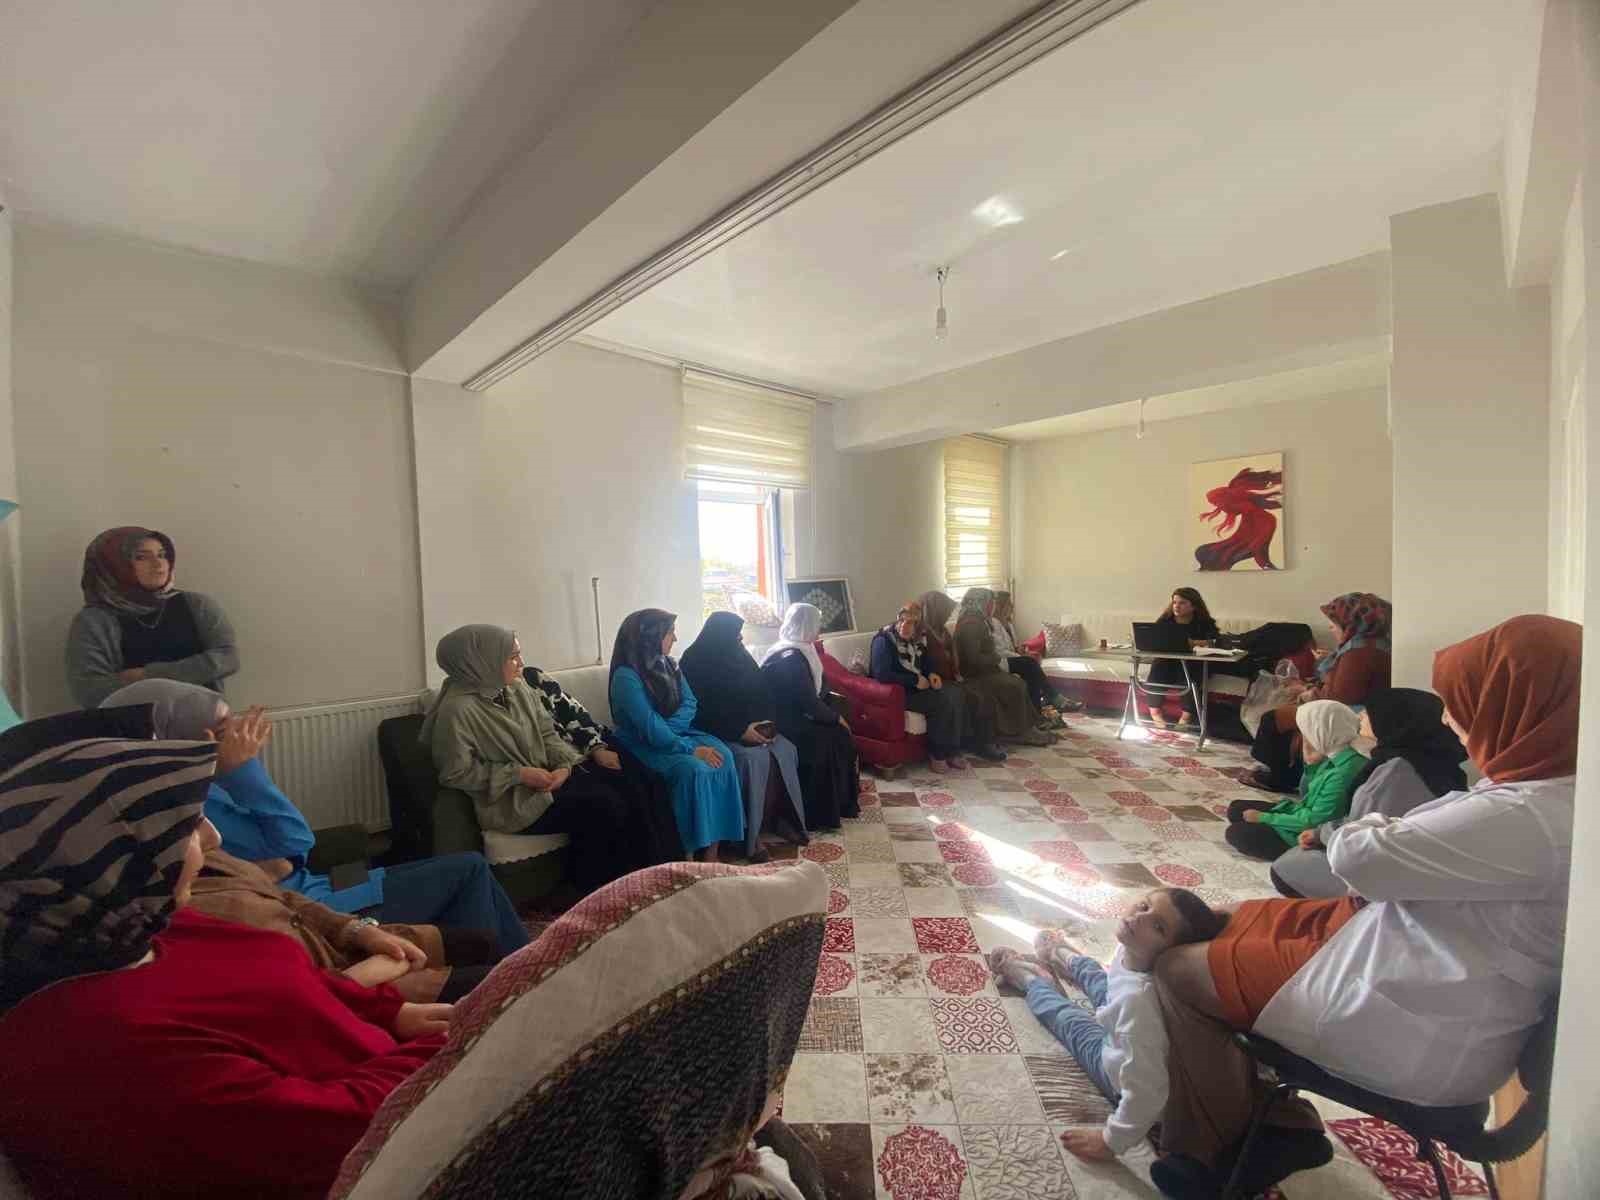 Erciş’te ‘Aile Akademisi’ eğitimleri devam ediyor